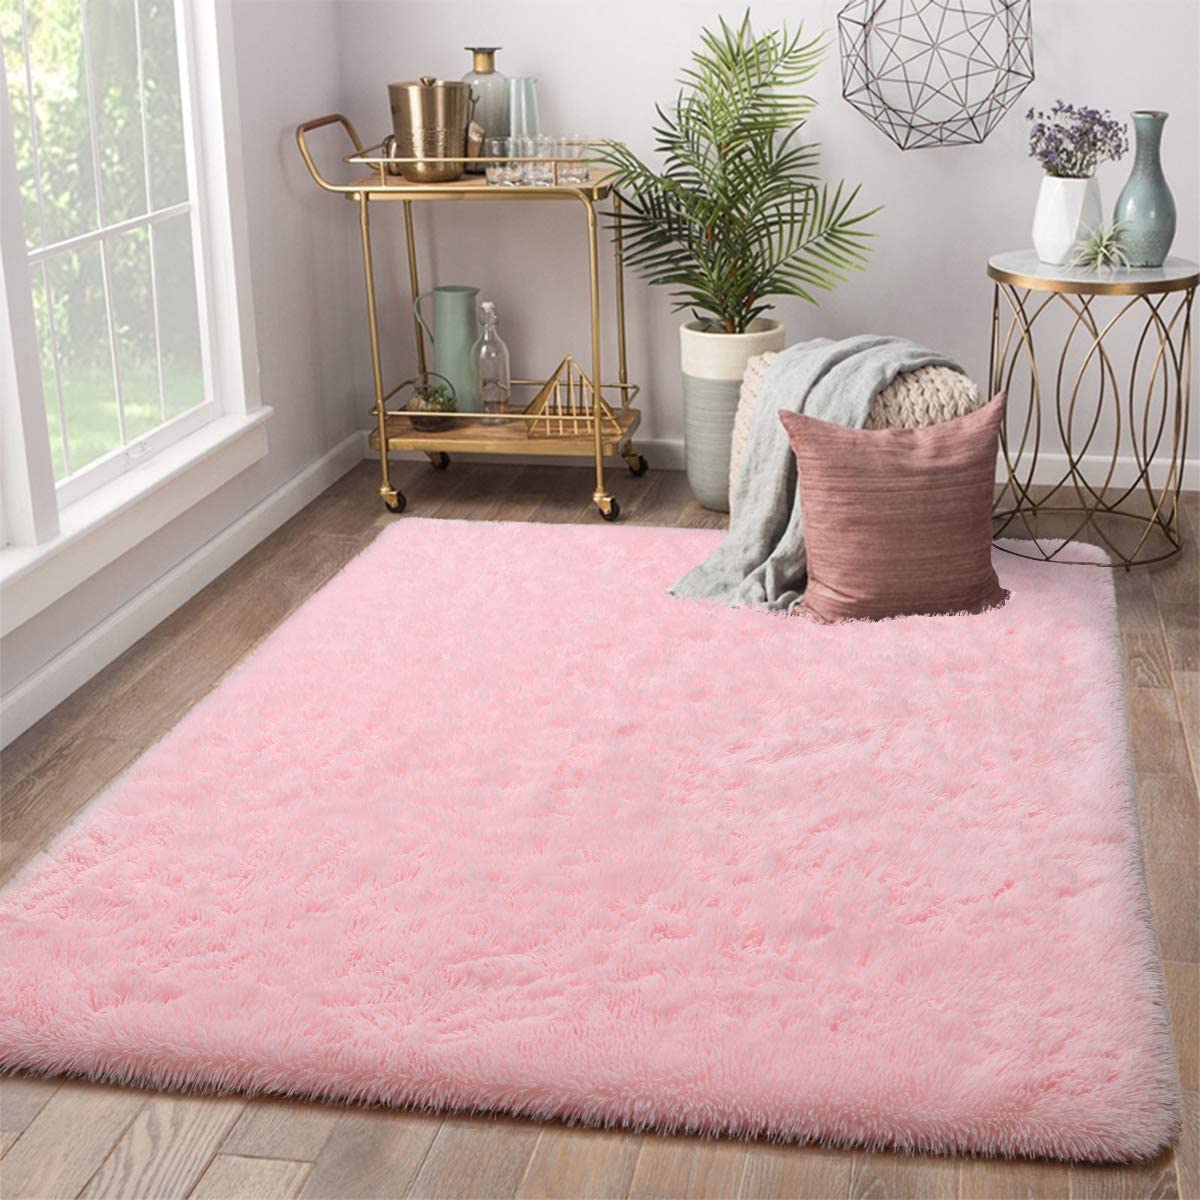 Terrug Soft Kids Room Rug, Pink Shag Area Rugs for Bedroom Living 